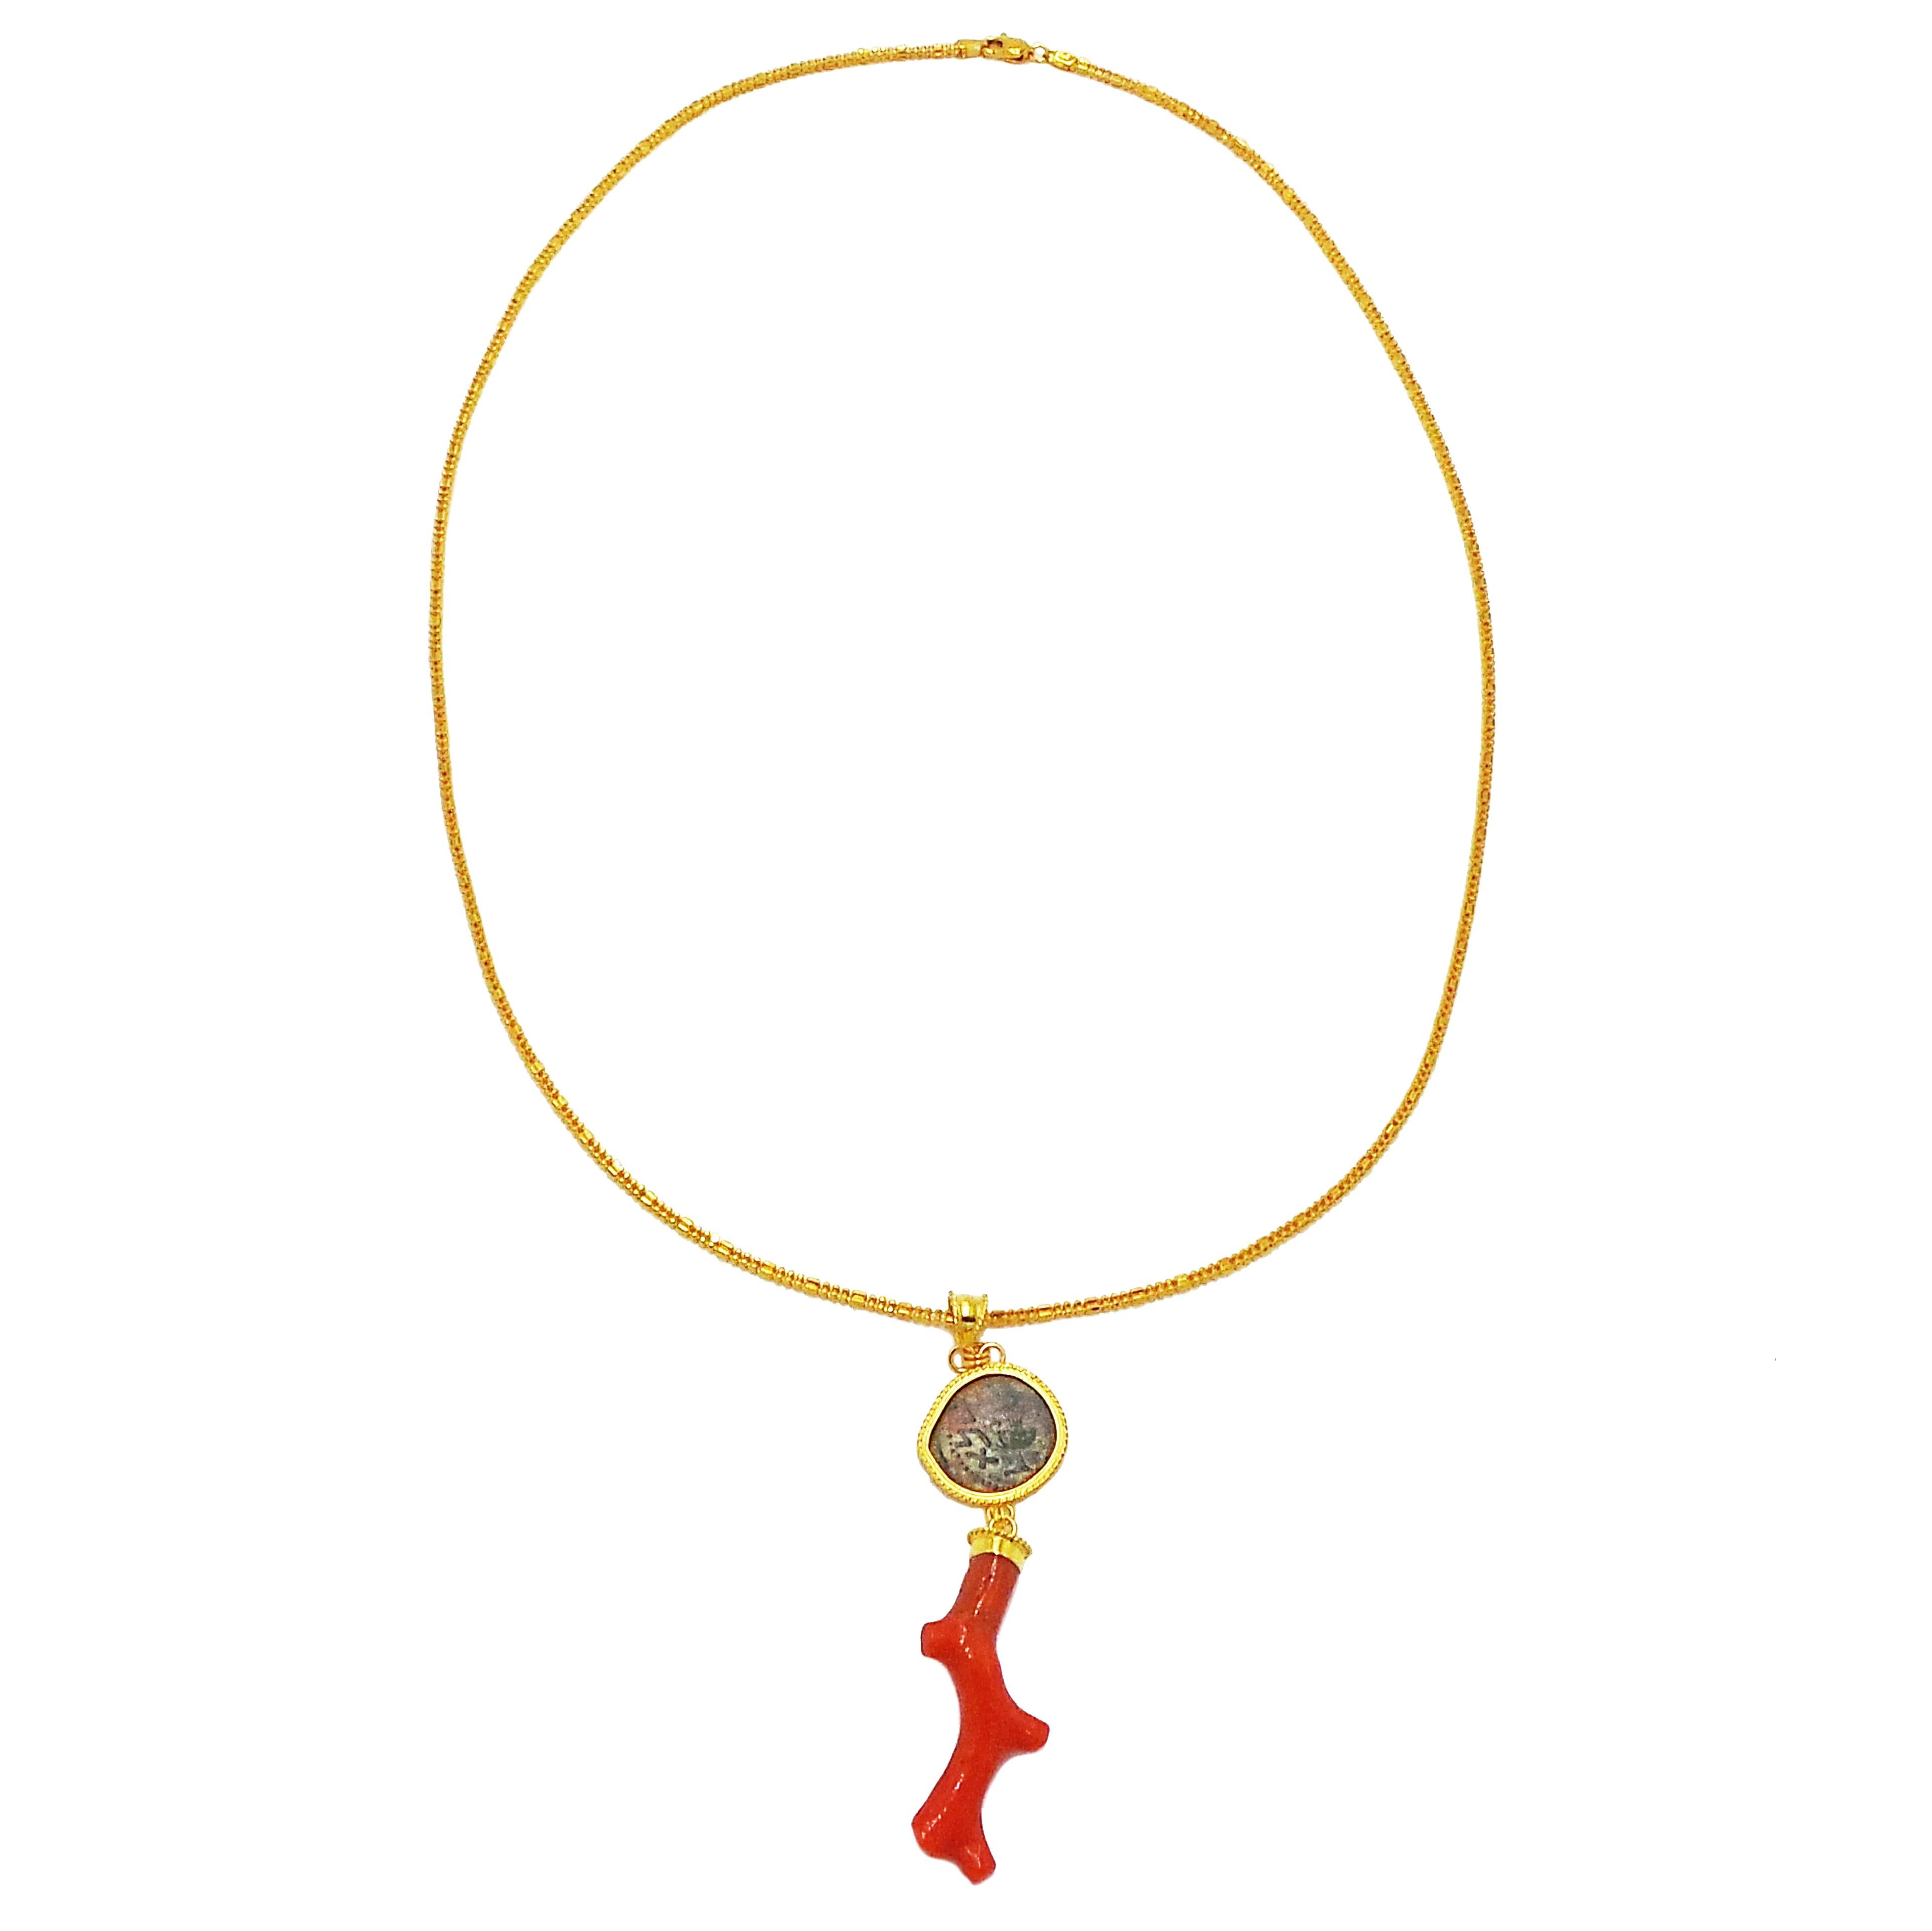 Collier pendentif en forme de branche organique en corail, pièce de monnaie juive ancienne et or 